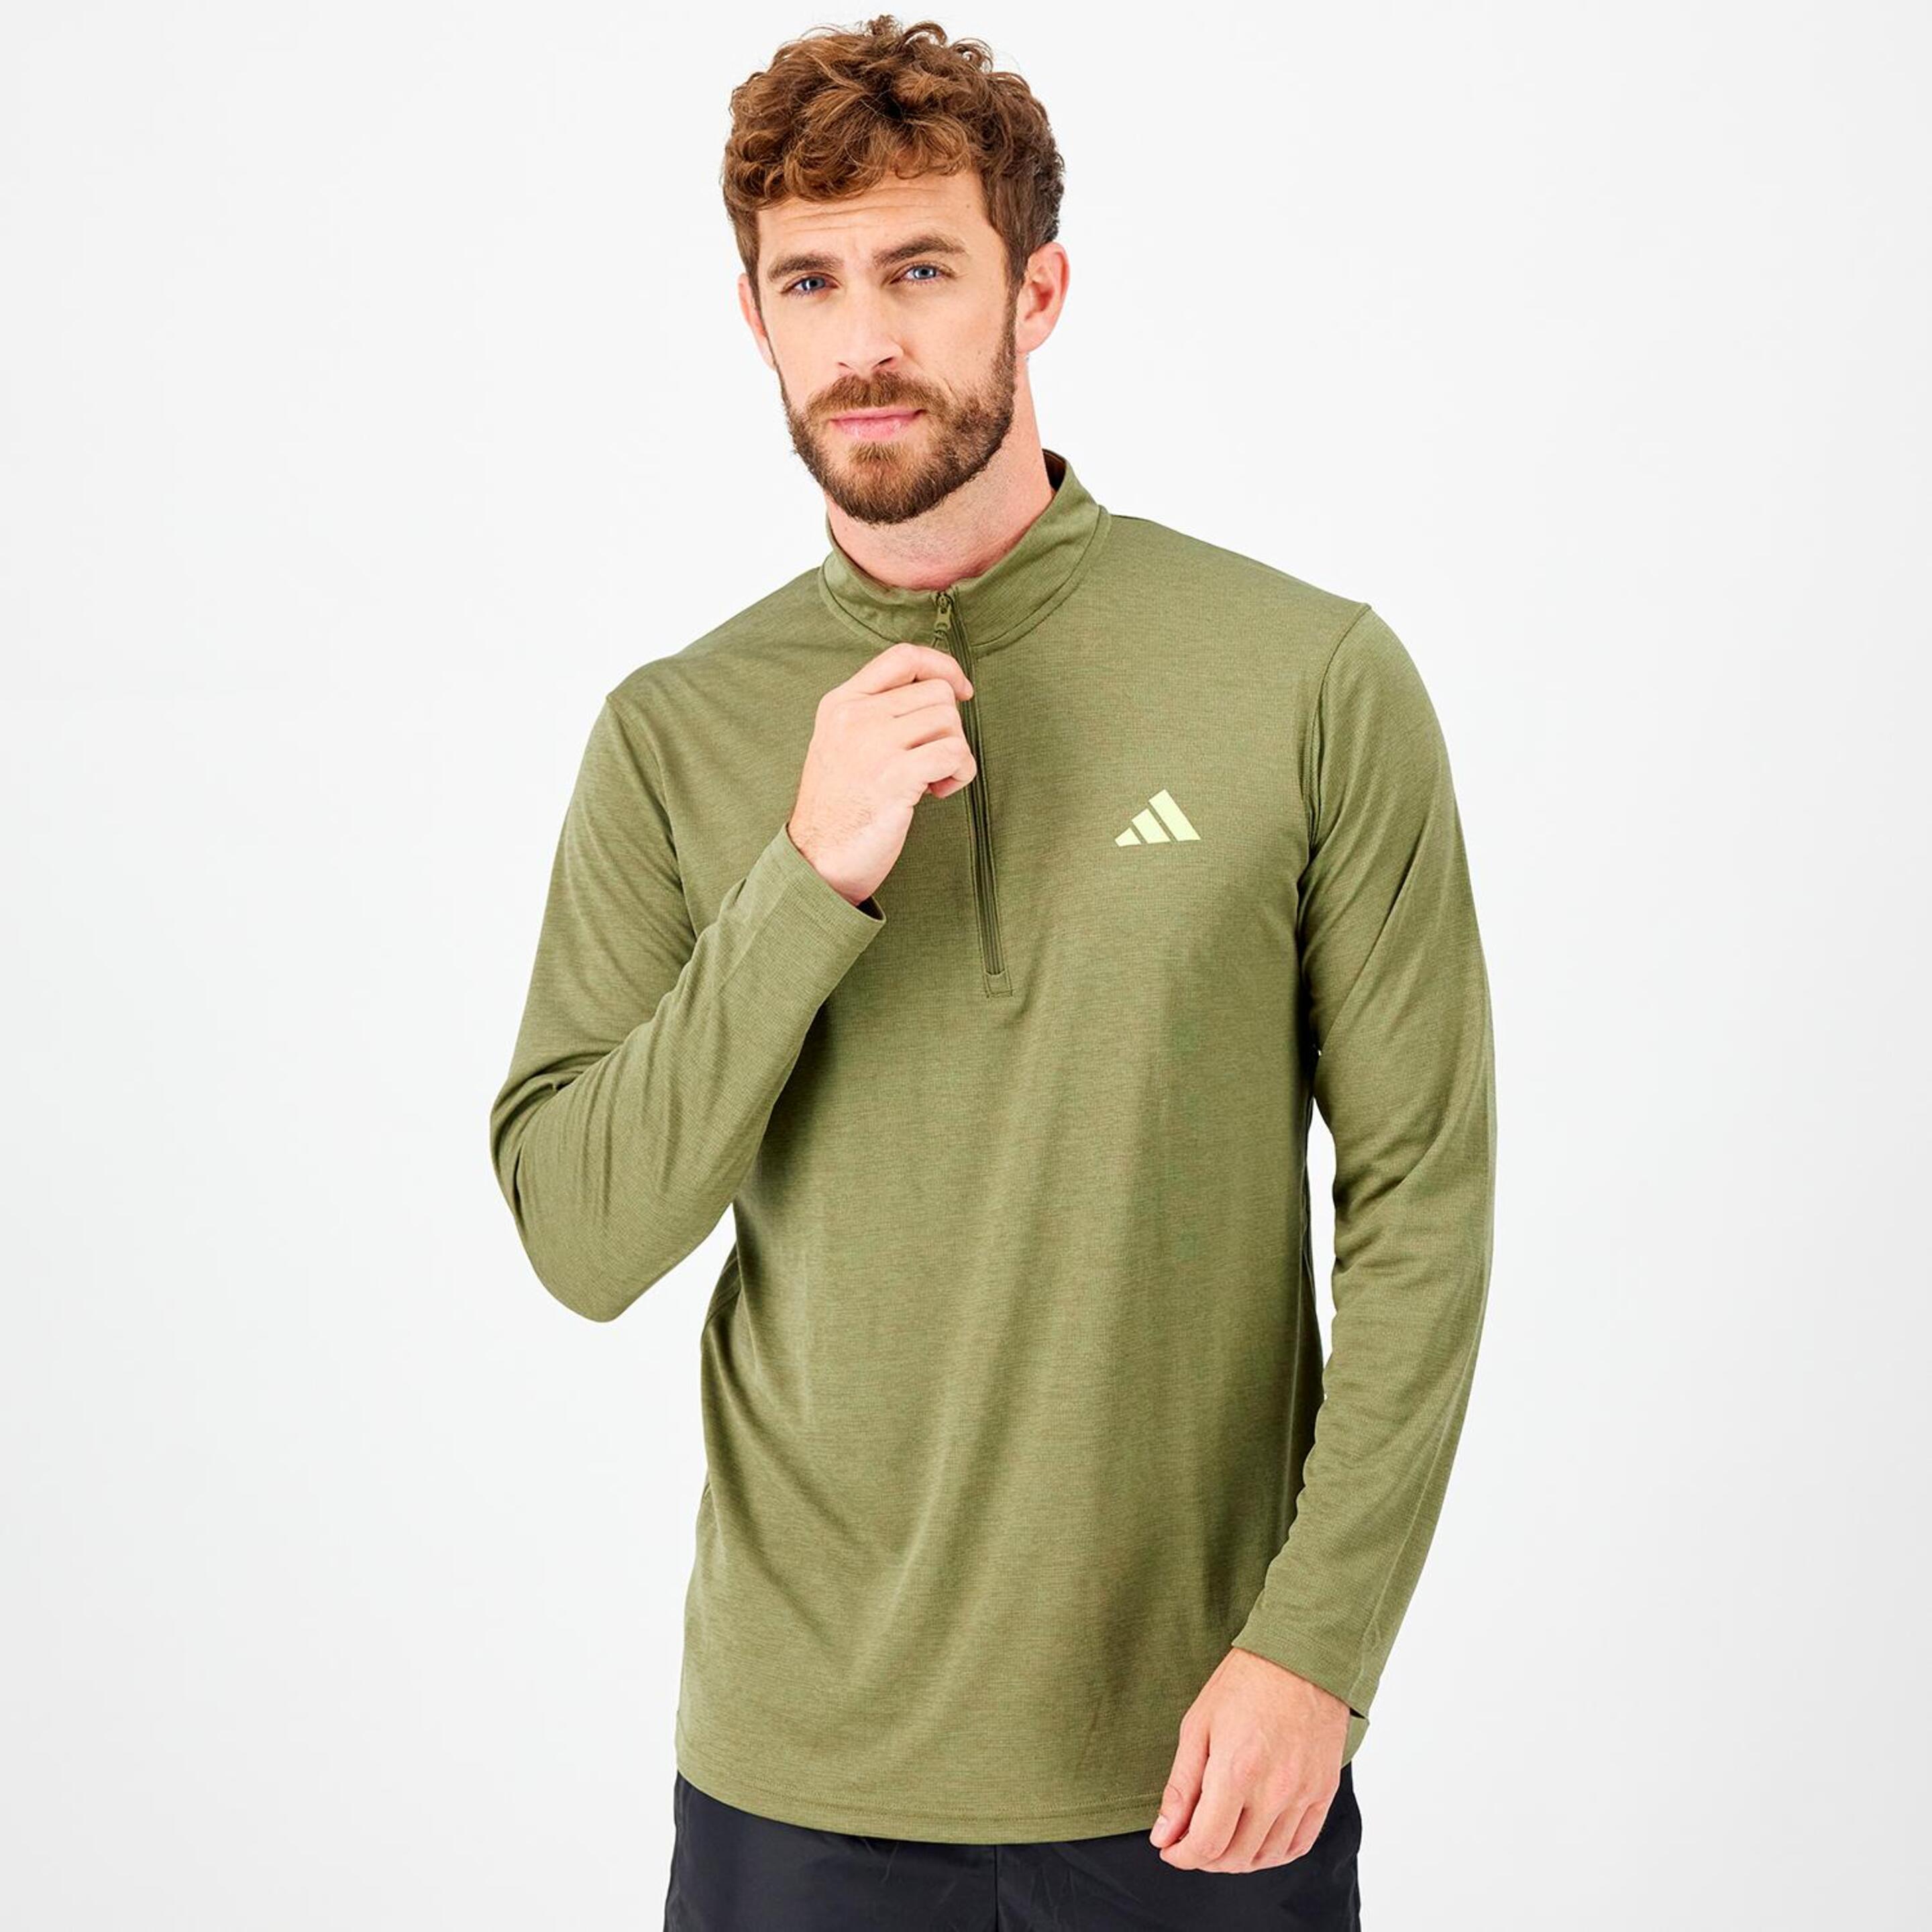 adidas Training - verde - Camiseta Running Hombre